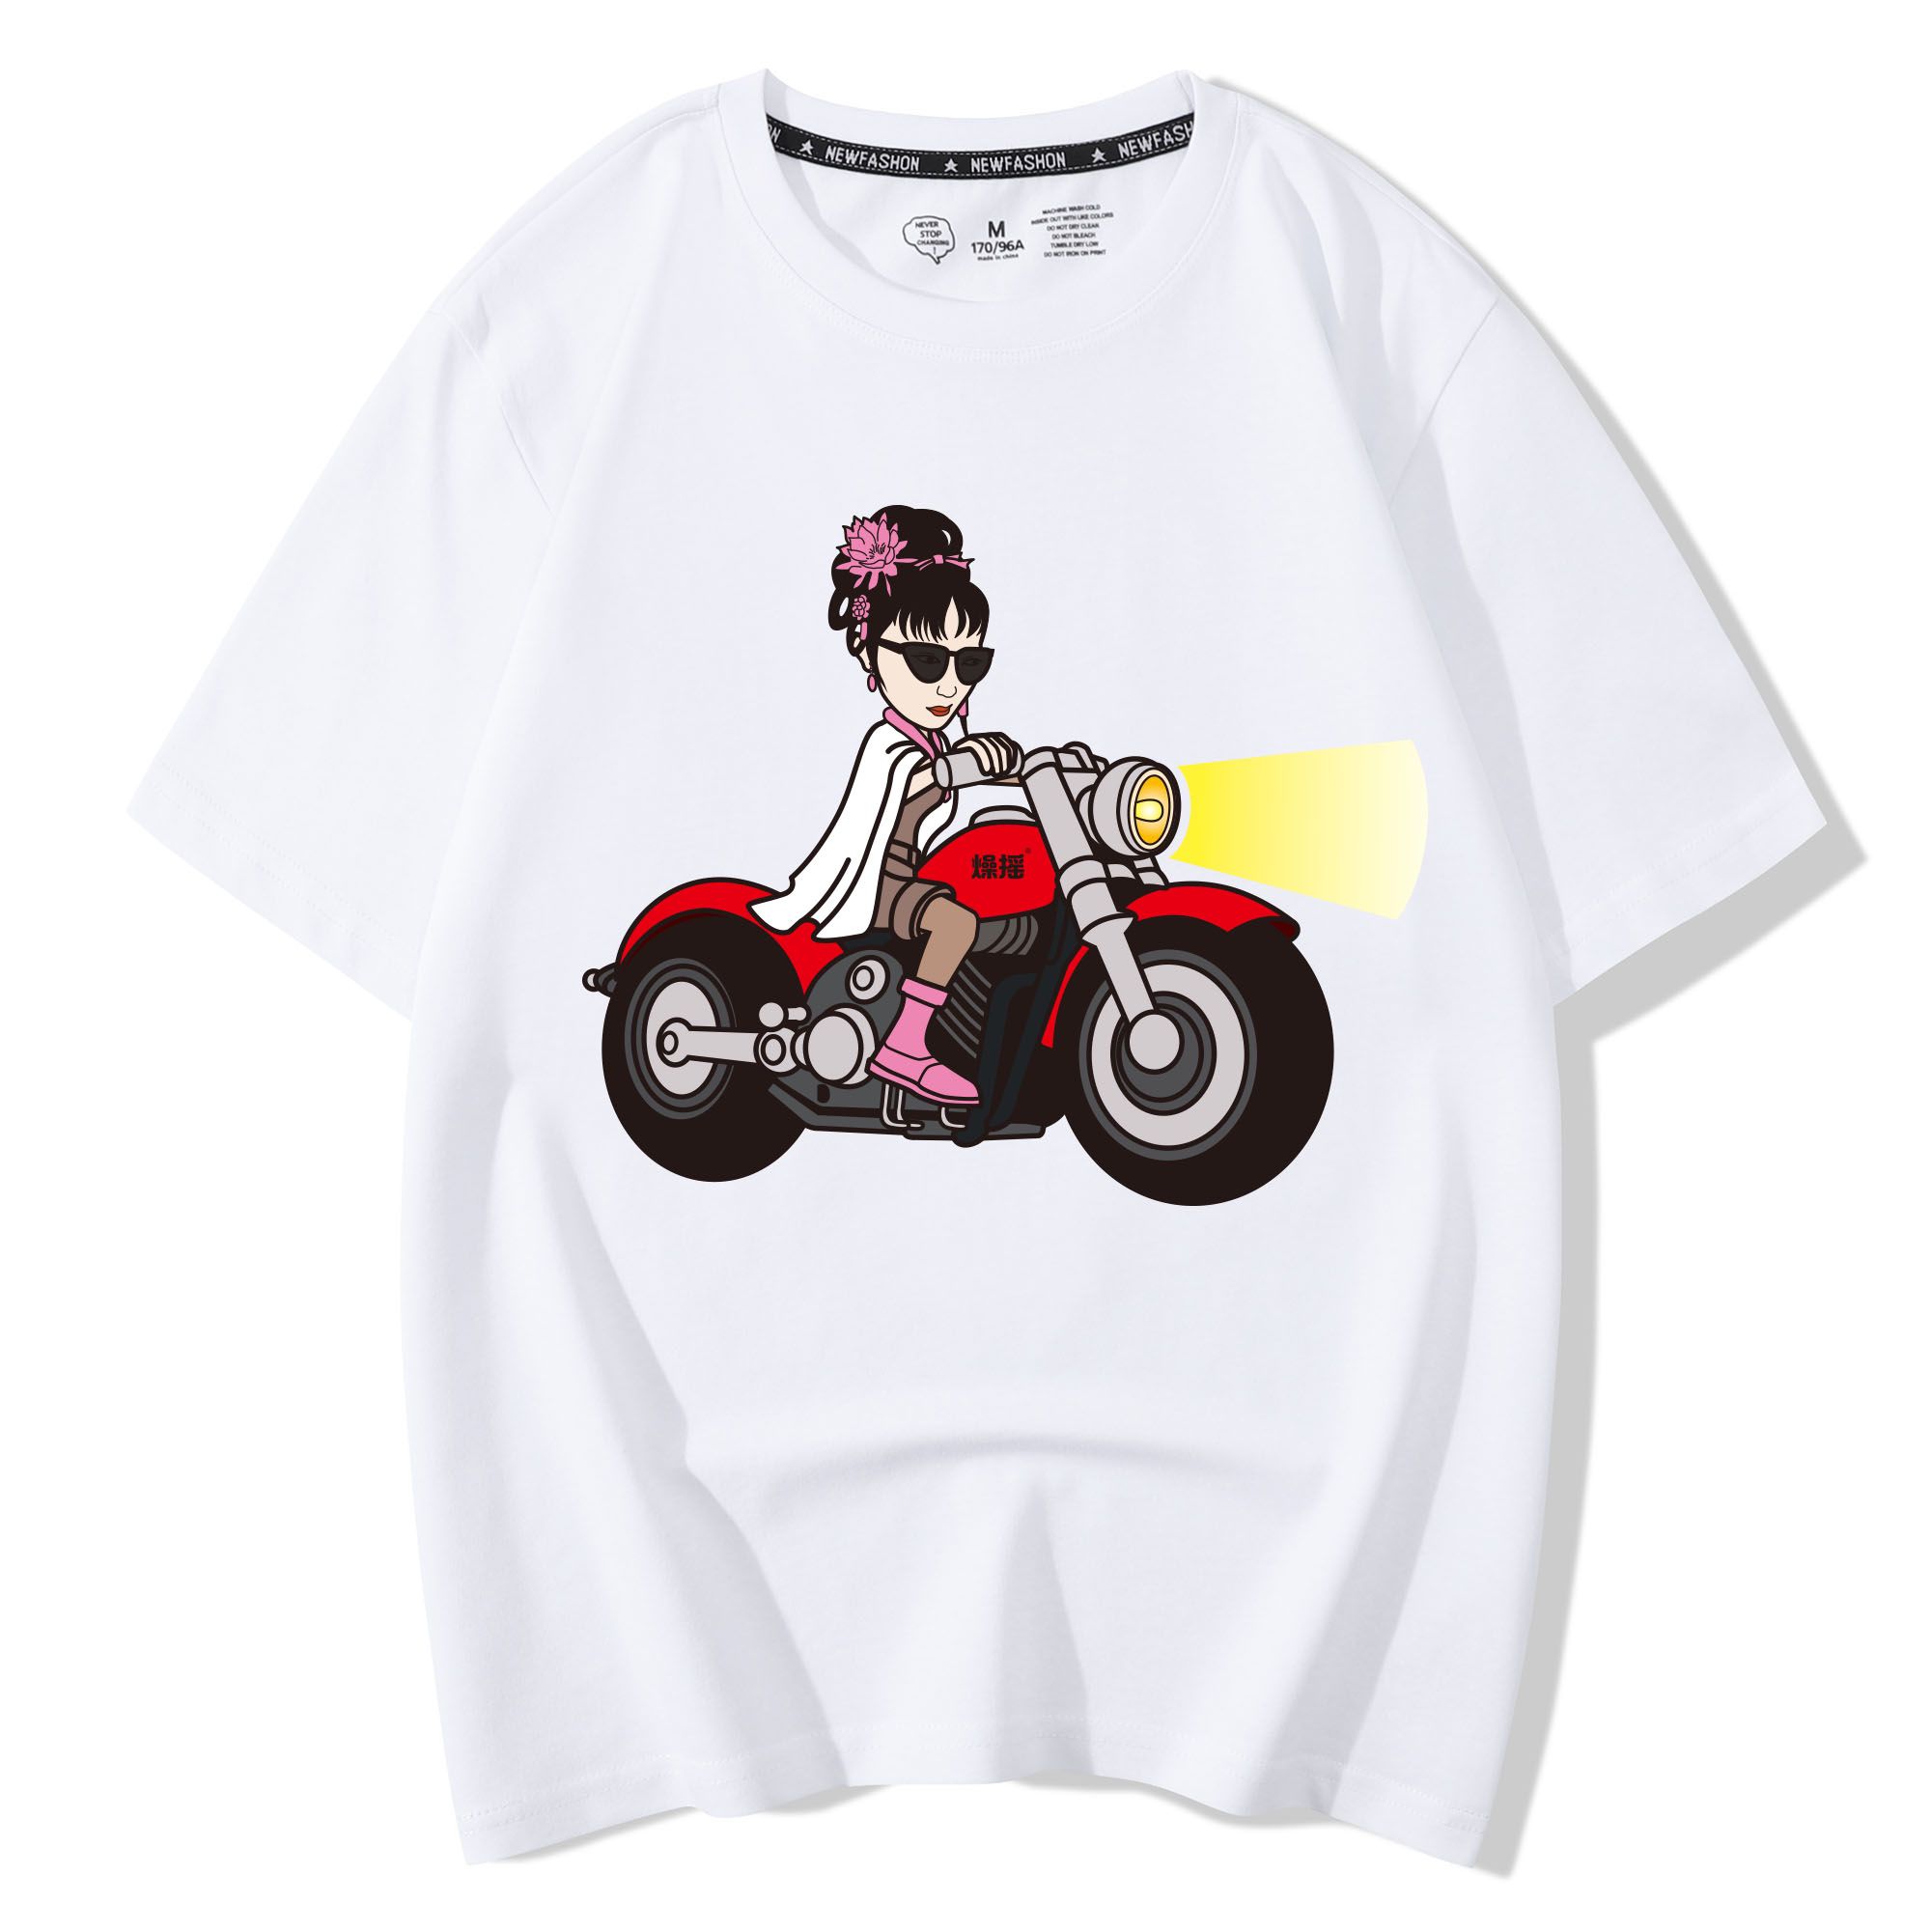 林黛玉骑摩托t恤短半袖燥摇原创设计恶搞笑红楼梦纯棉男女青少年